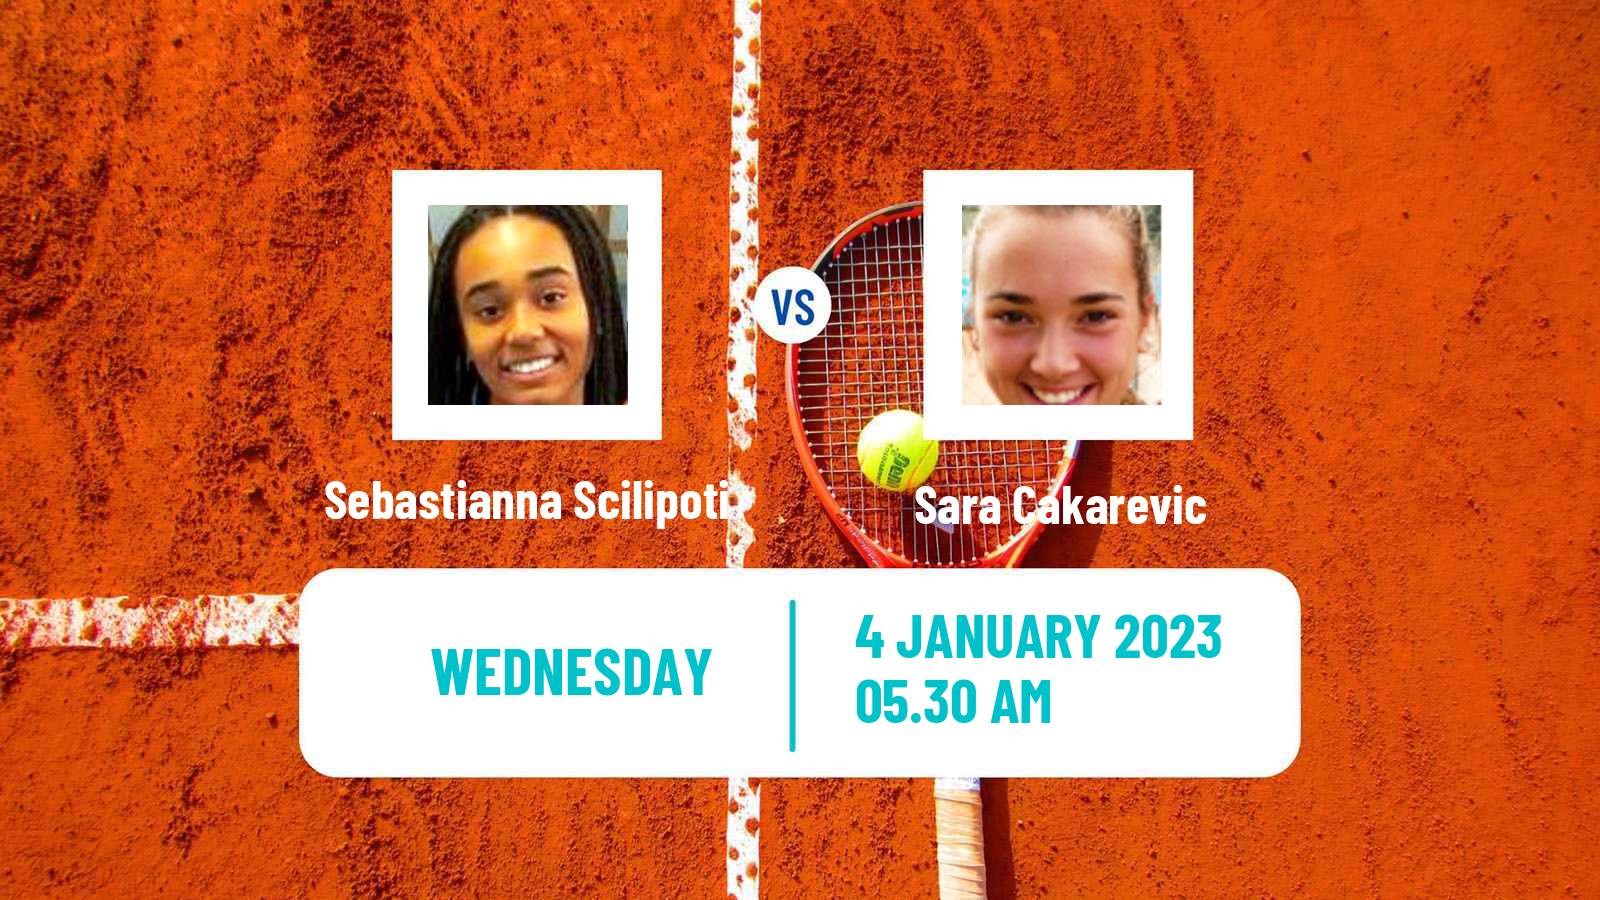 Tennis ITF Tournaments Sebastianna Scilipoti - Sara Cakarevic